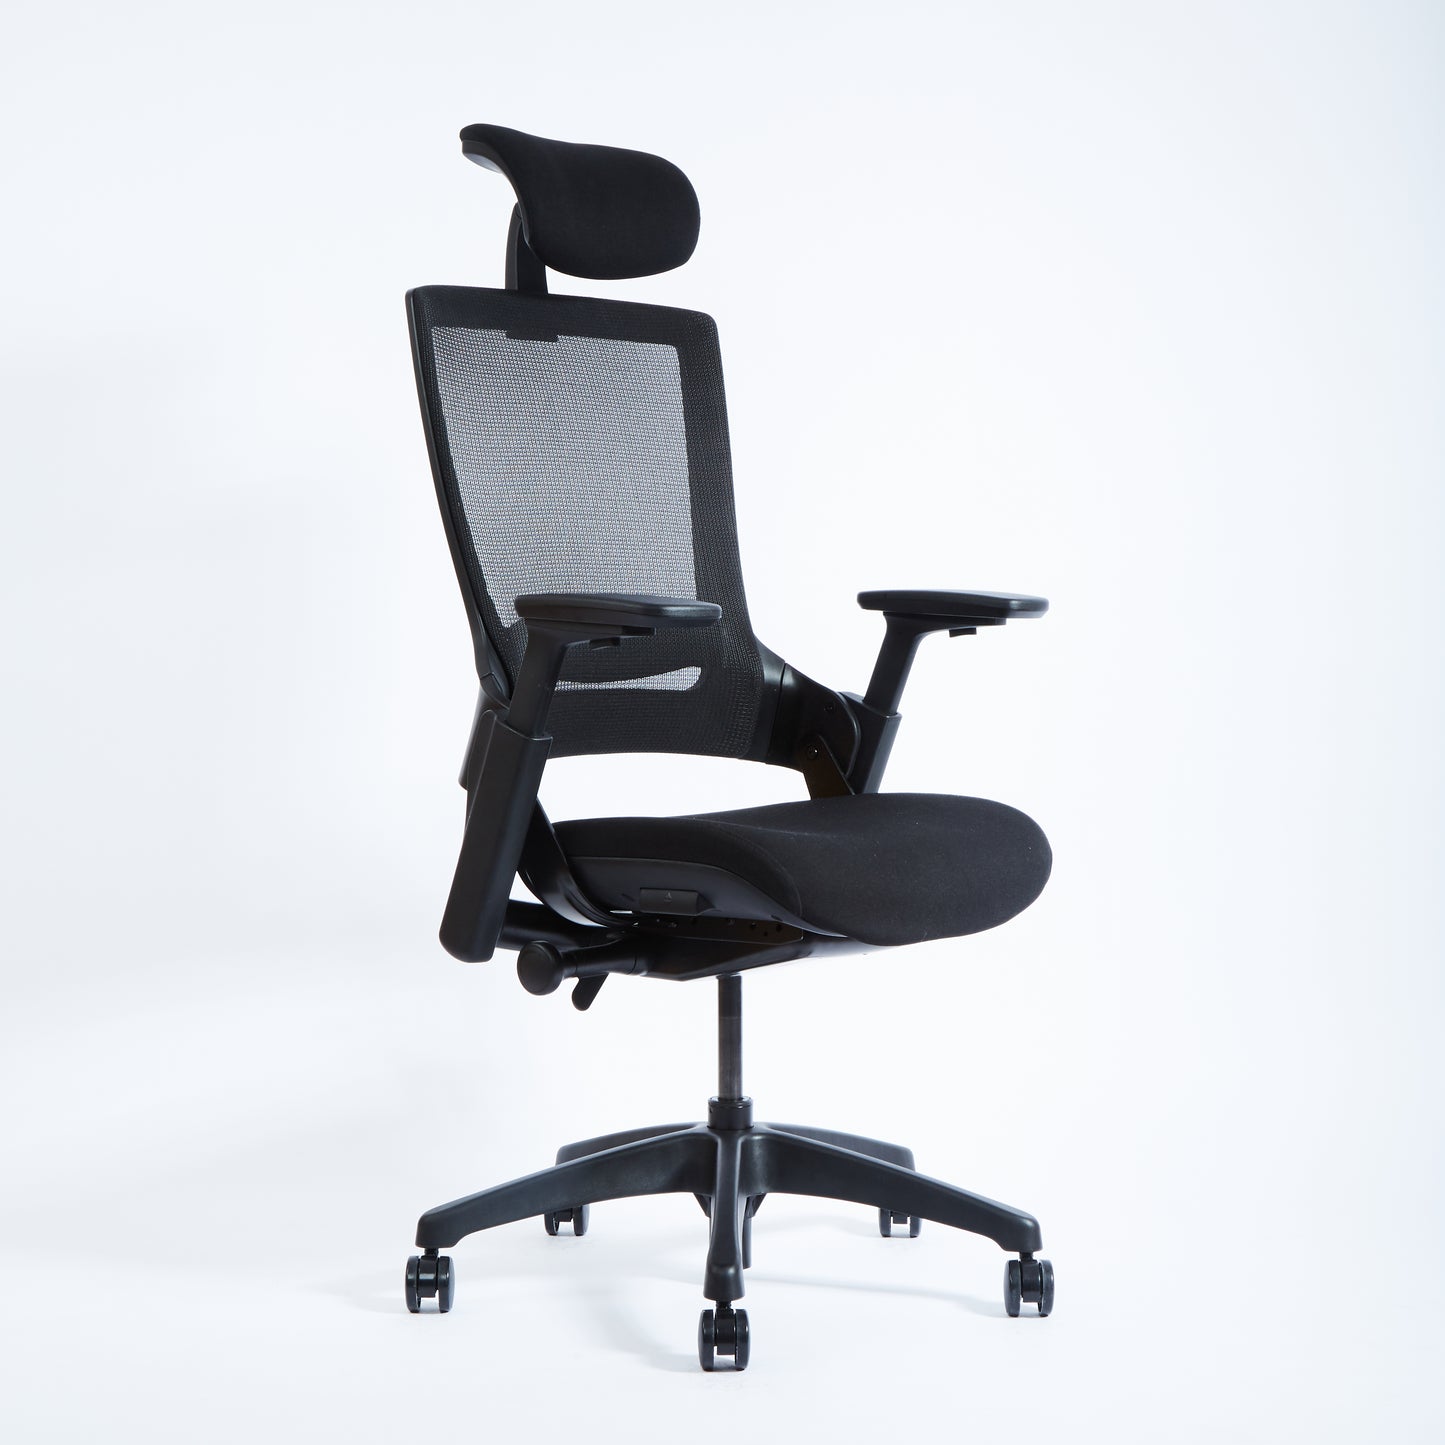 เก้าอี้ทำงานเพื่อสุขภาพ Ergonomic รุ่น Signature Series ตัวจบ คุ้มค่า  รับประกัน 3 ปีเต็ม – Dreamdesk